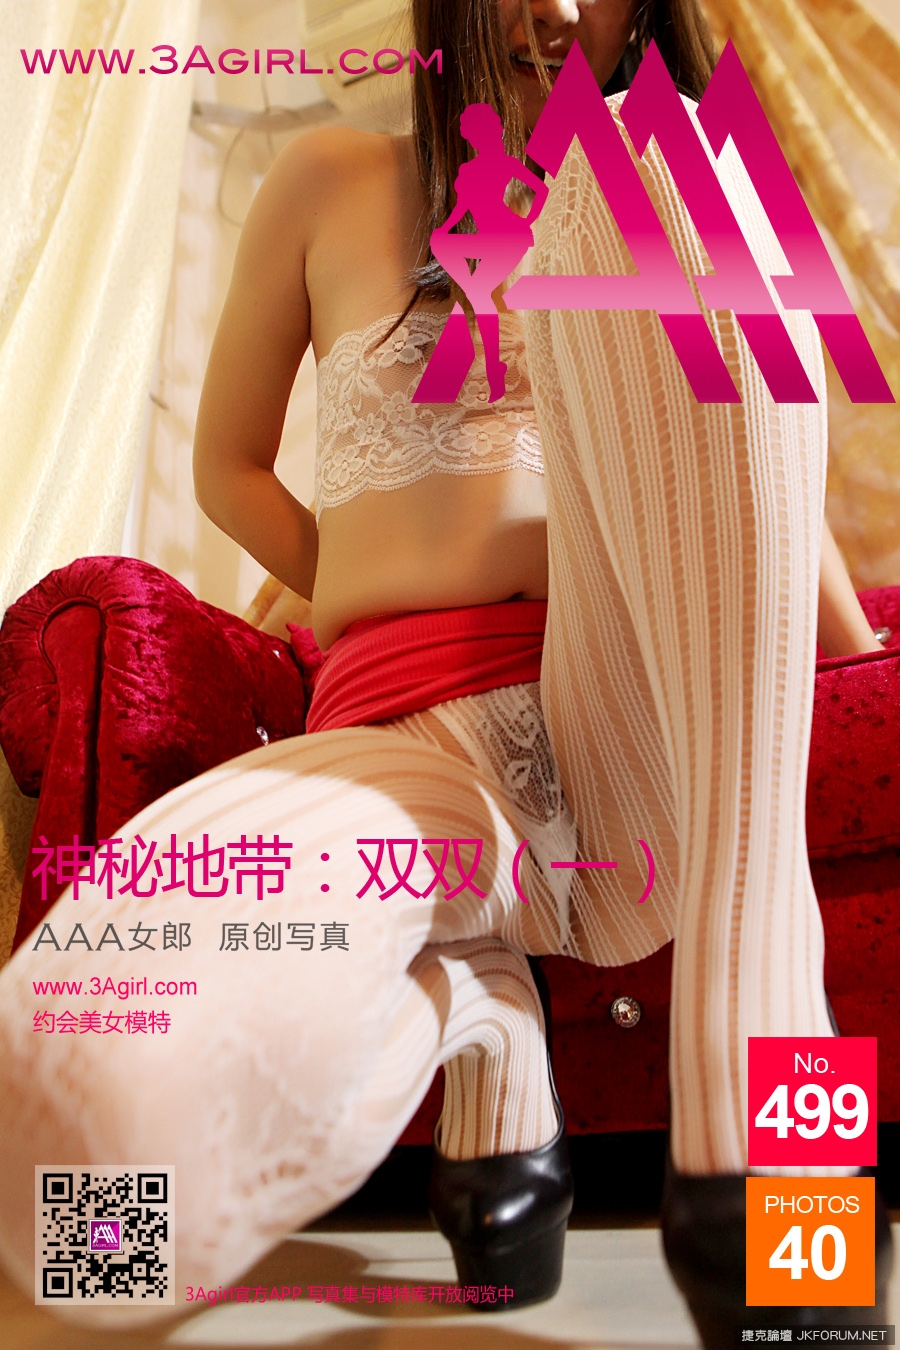 【3Agirl系列】 No.499 AAA女郎 神秘地帶：雙雙（一）【41P】 - 貼圖 - 絲襪美腿 -